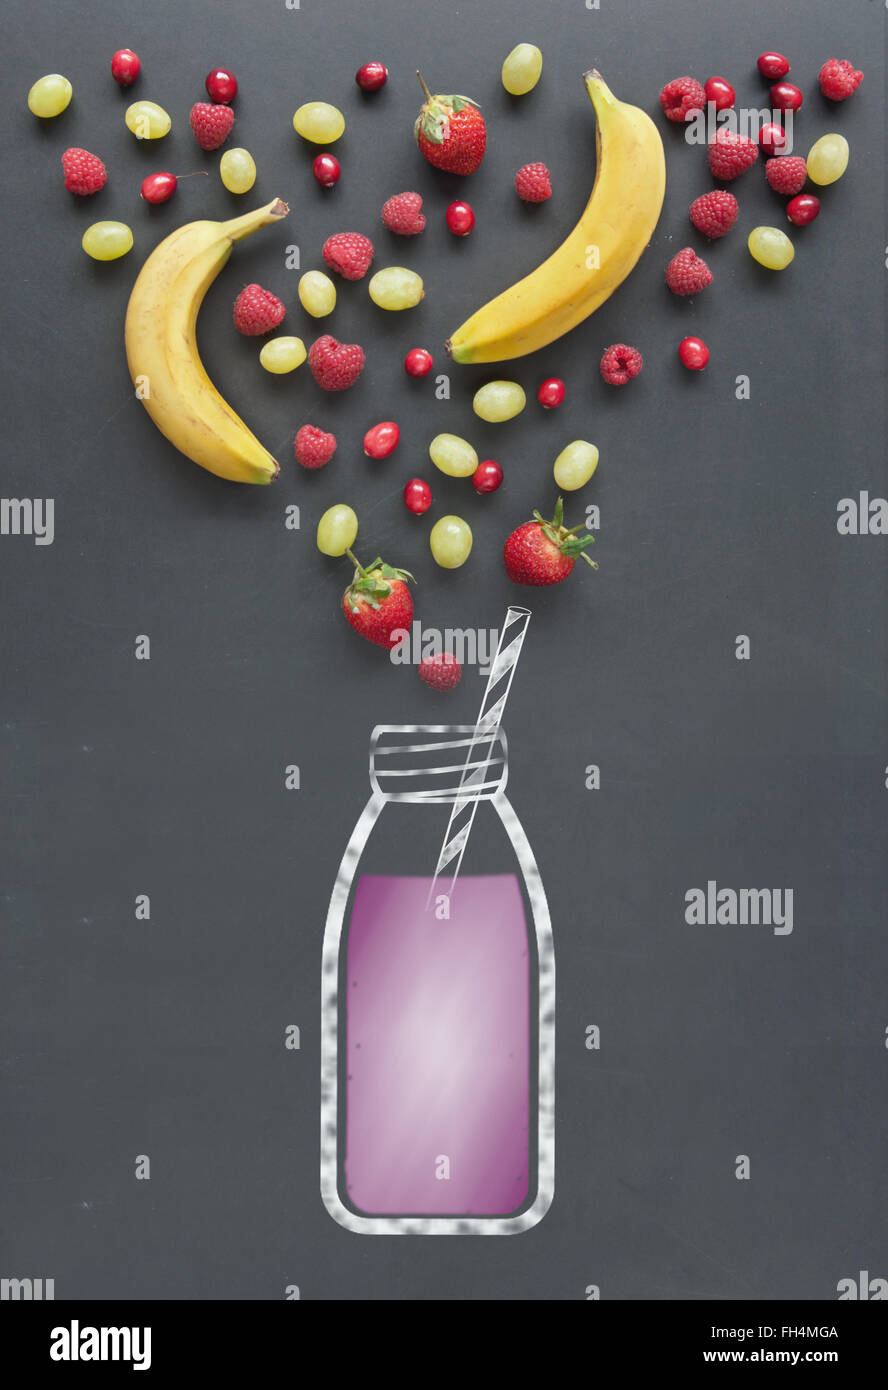 Frisches Obst wie Beeren, Cranberrries und Himbeeren neben einer Zeichnung einen Smoothie auf einer Kreidetafel Stockfoto